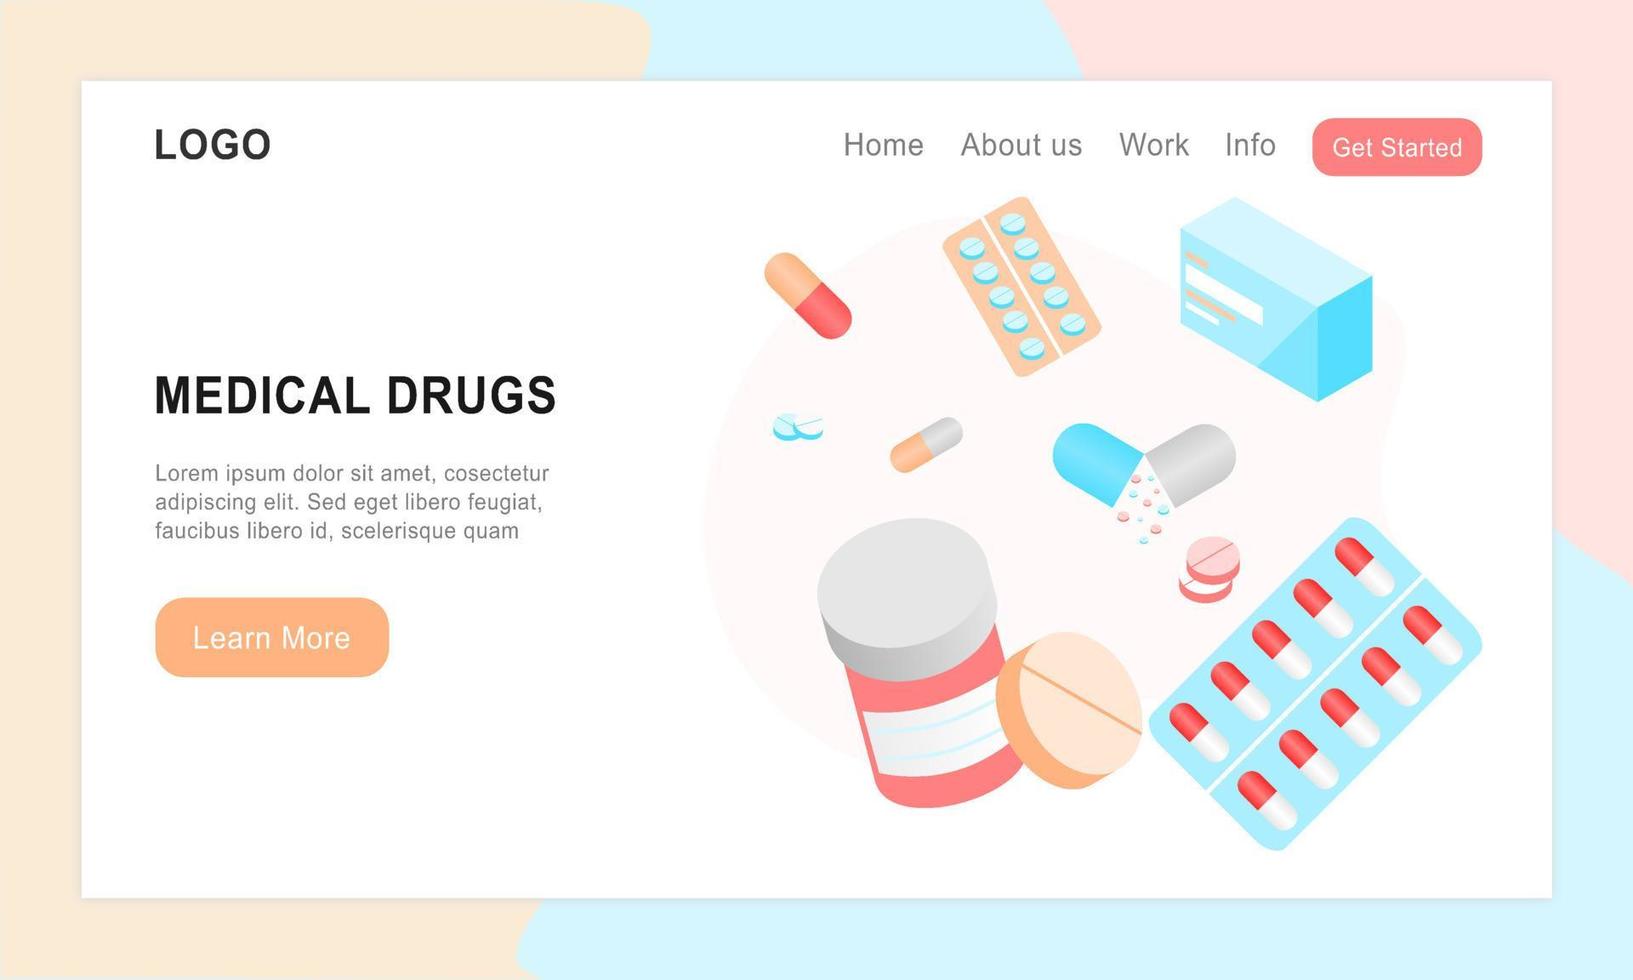 Landingpage für Medikamente. Konzept für medizinische Unterstützung und Drogensucht, Medizinpillen und Kapseln. Vektorgrafik-Apotheken-Webseiten-App für Patientenunterstützung und Online-Verkaufsprodukte. vektor